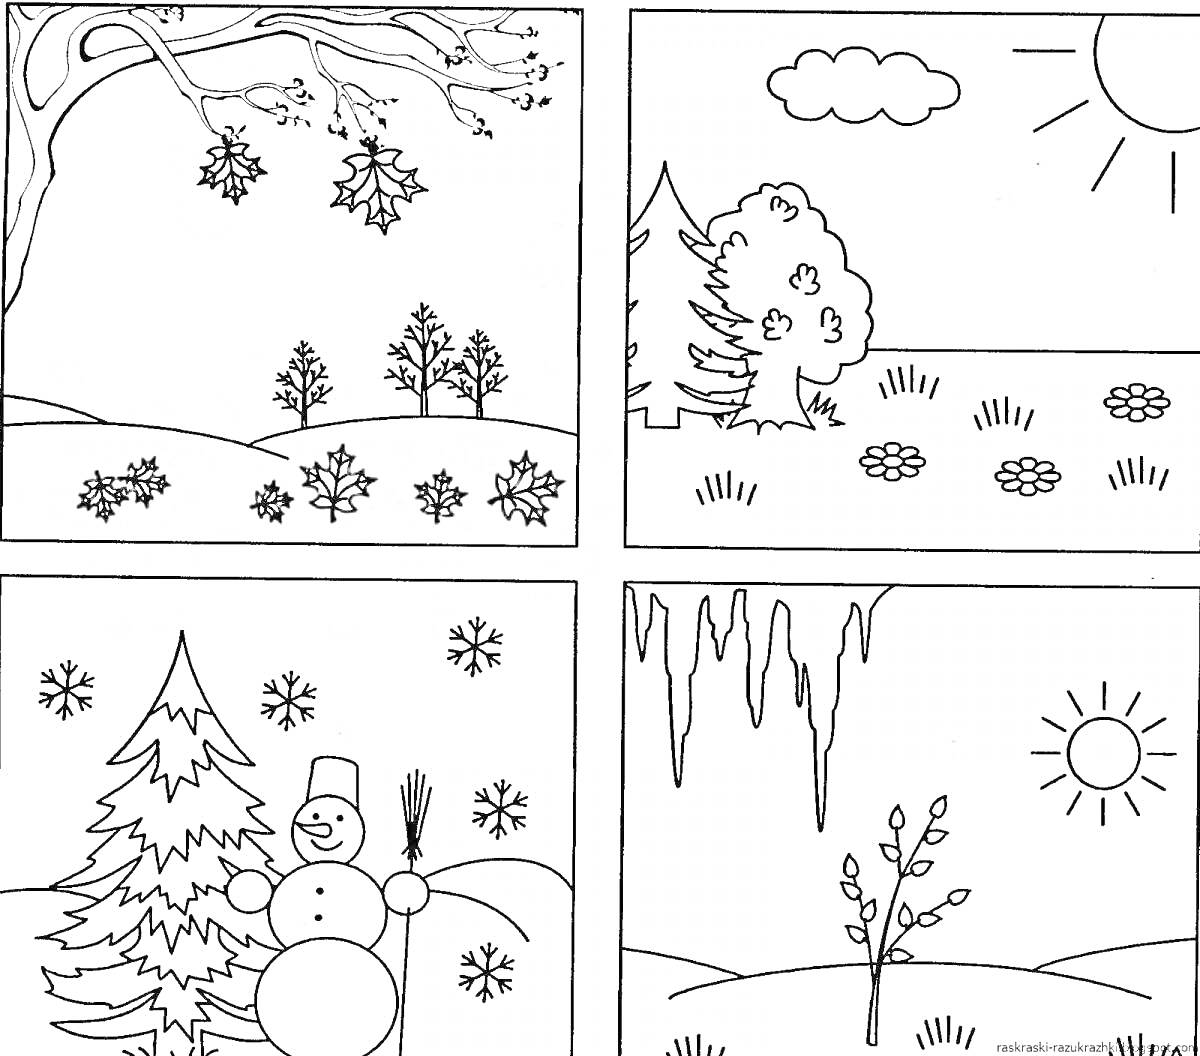 Времена года для детей 4-5 лет. Зима: снег, снеговик, елка. Весна: капель, солнечный день, почки на деревьях. Лето: солнце, облако, цветы, дерево, кусты. Осень: дерево с падающими листьями, опавшие листья на земле.